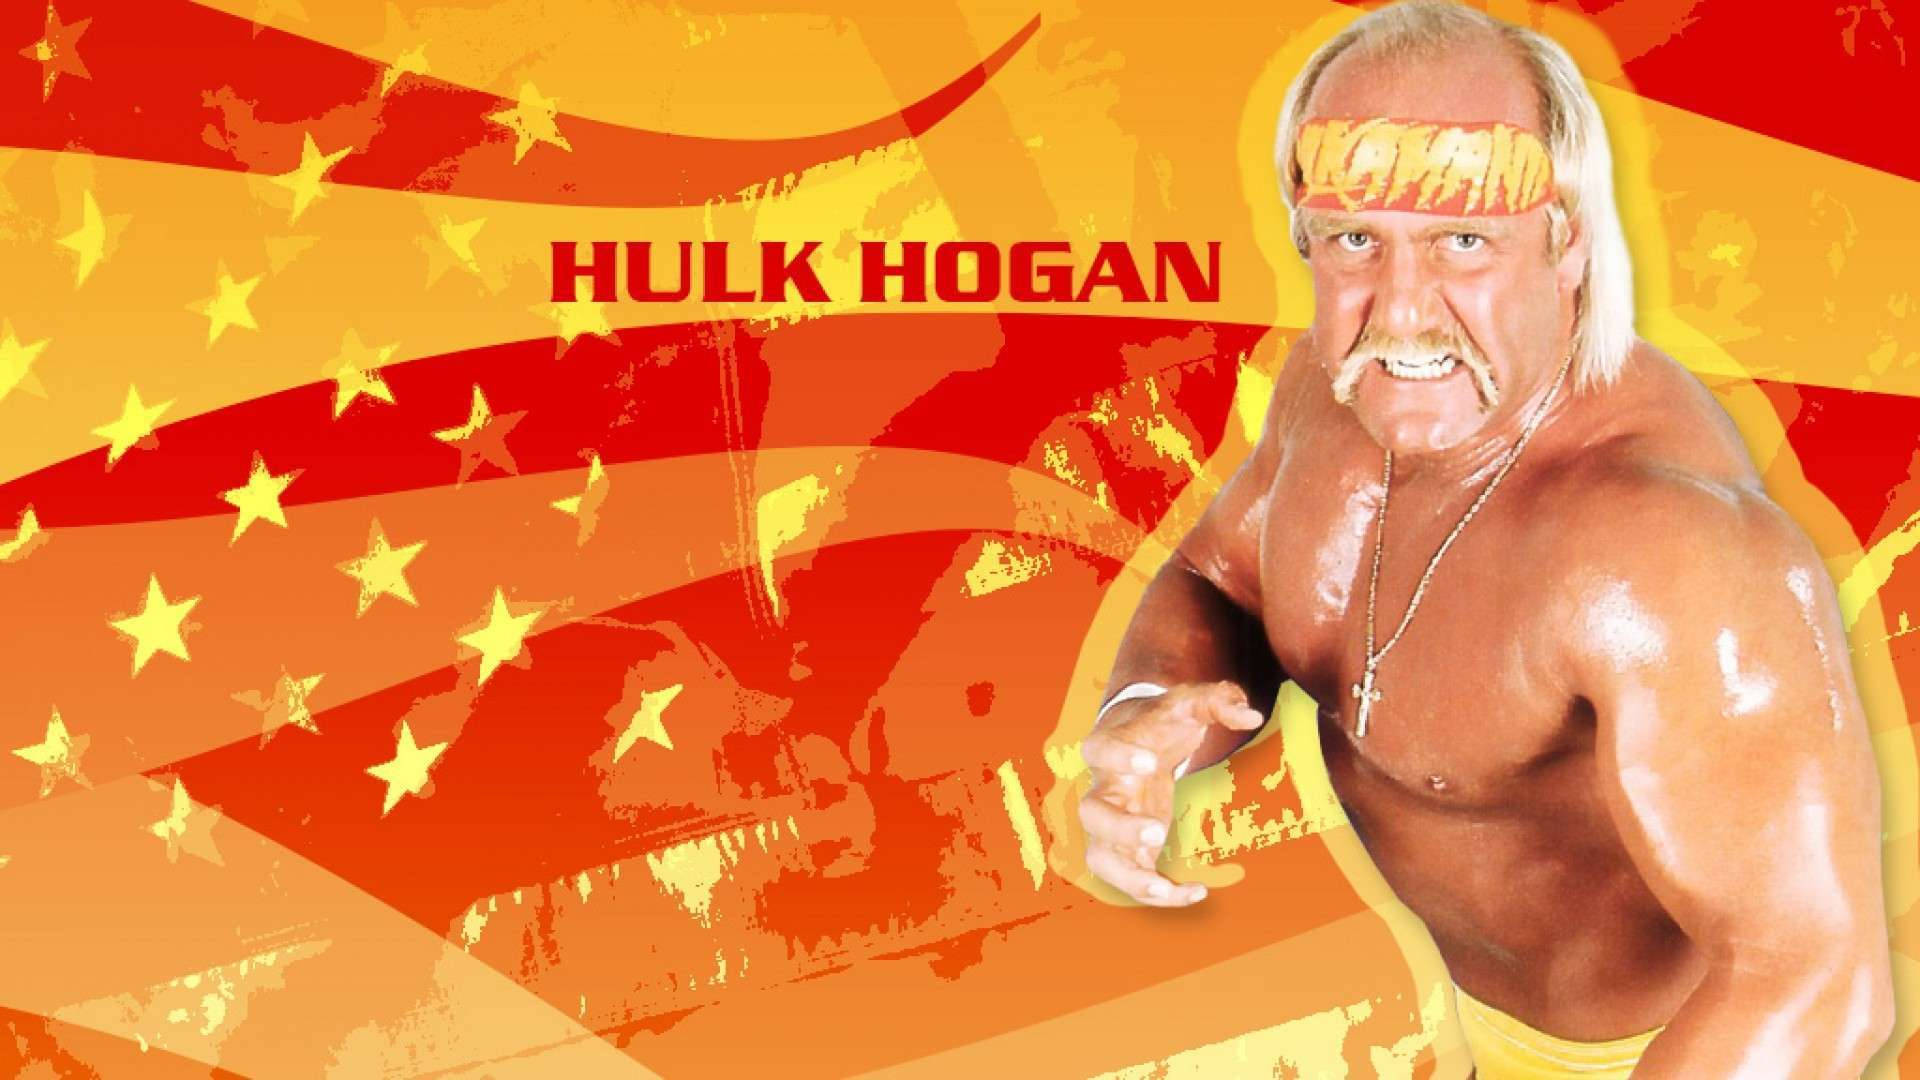 Hulk hogan backgrounds HD wallpapers  Pxfuel